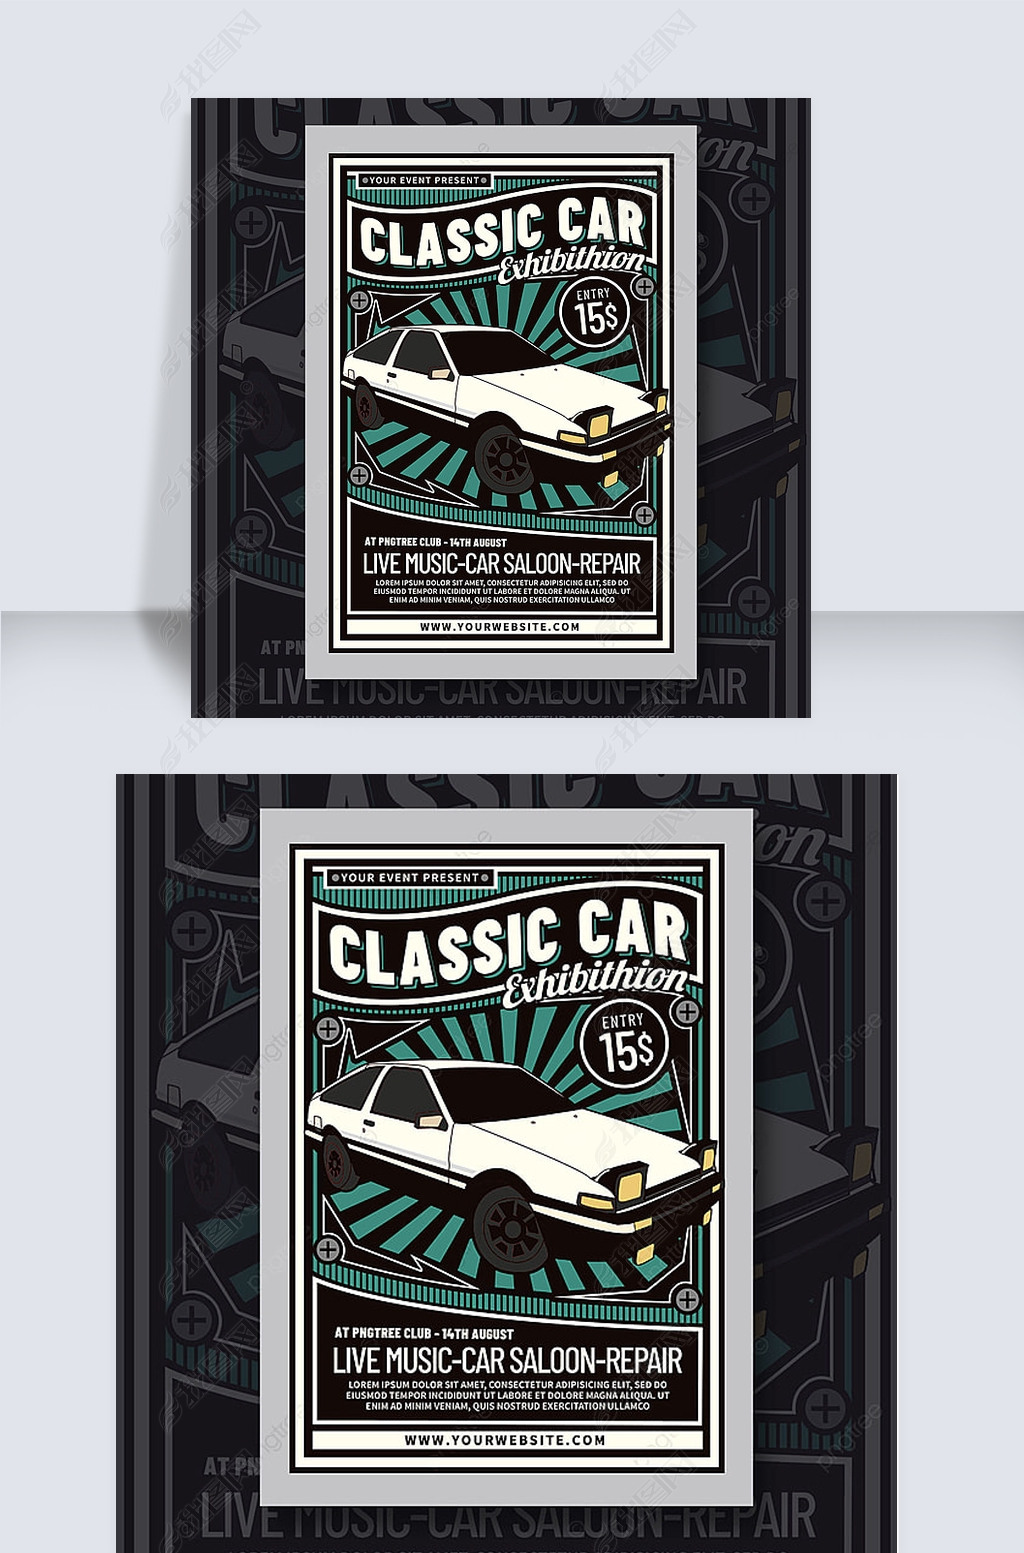 classic car exhibition